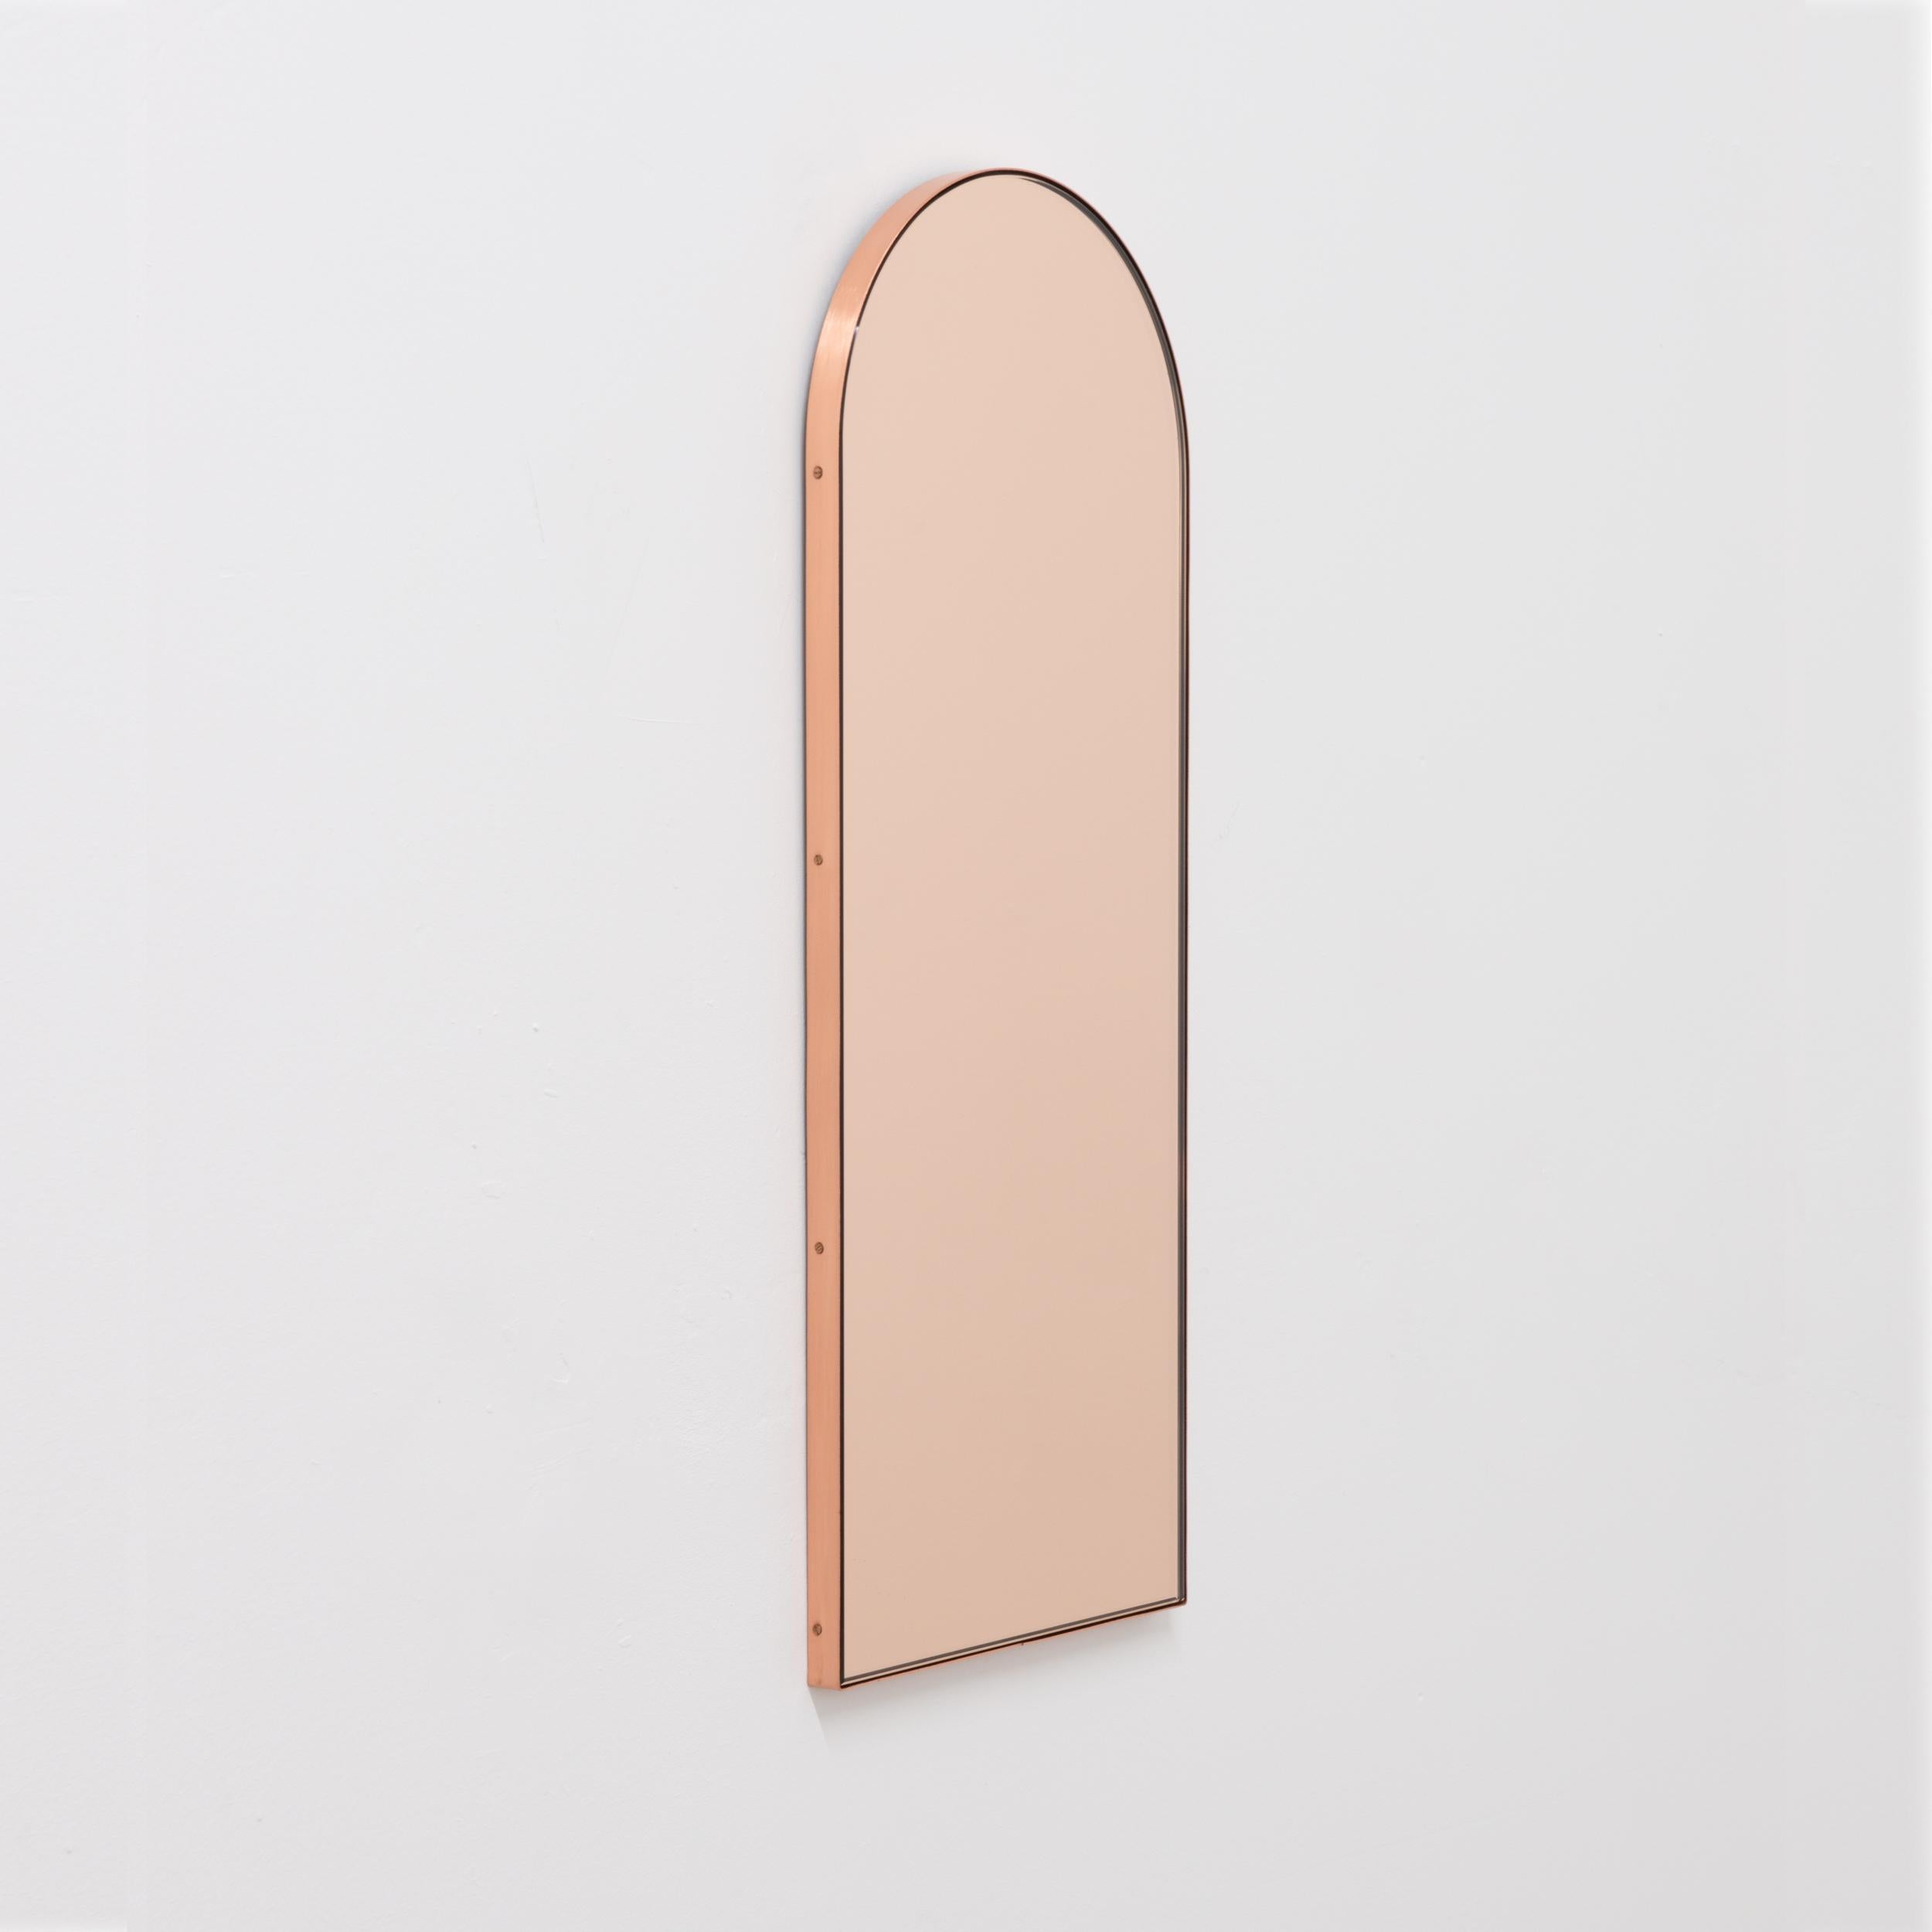 Miroir contemporain en forme d'arche en or rose / pêche avec un cadre élégant en cuivre massif brossé. Conçu et fabriqué à la main à Londres, au Royaume-Uni.

Les miroirs de taille moyenne, grande et extra-large (37cm x 56cm, 46cm x 71cm et 48cm x